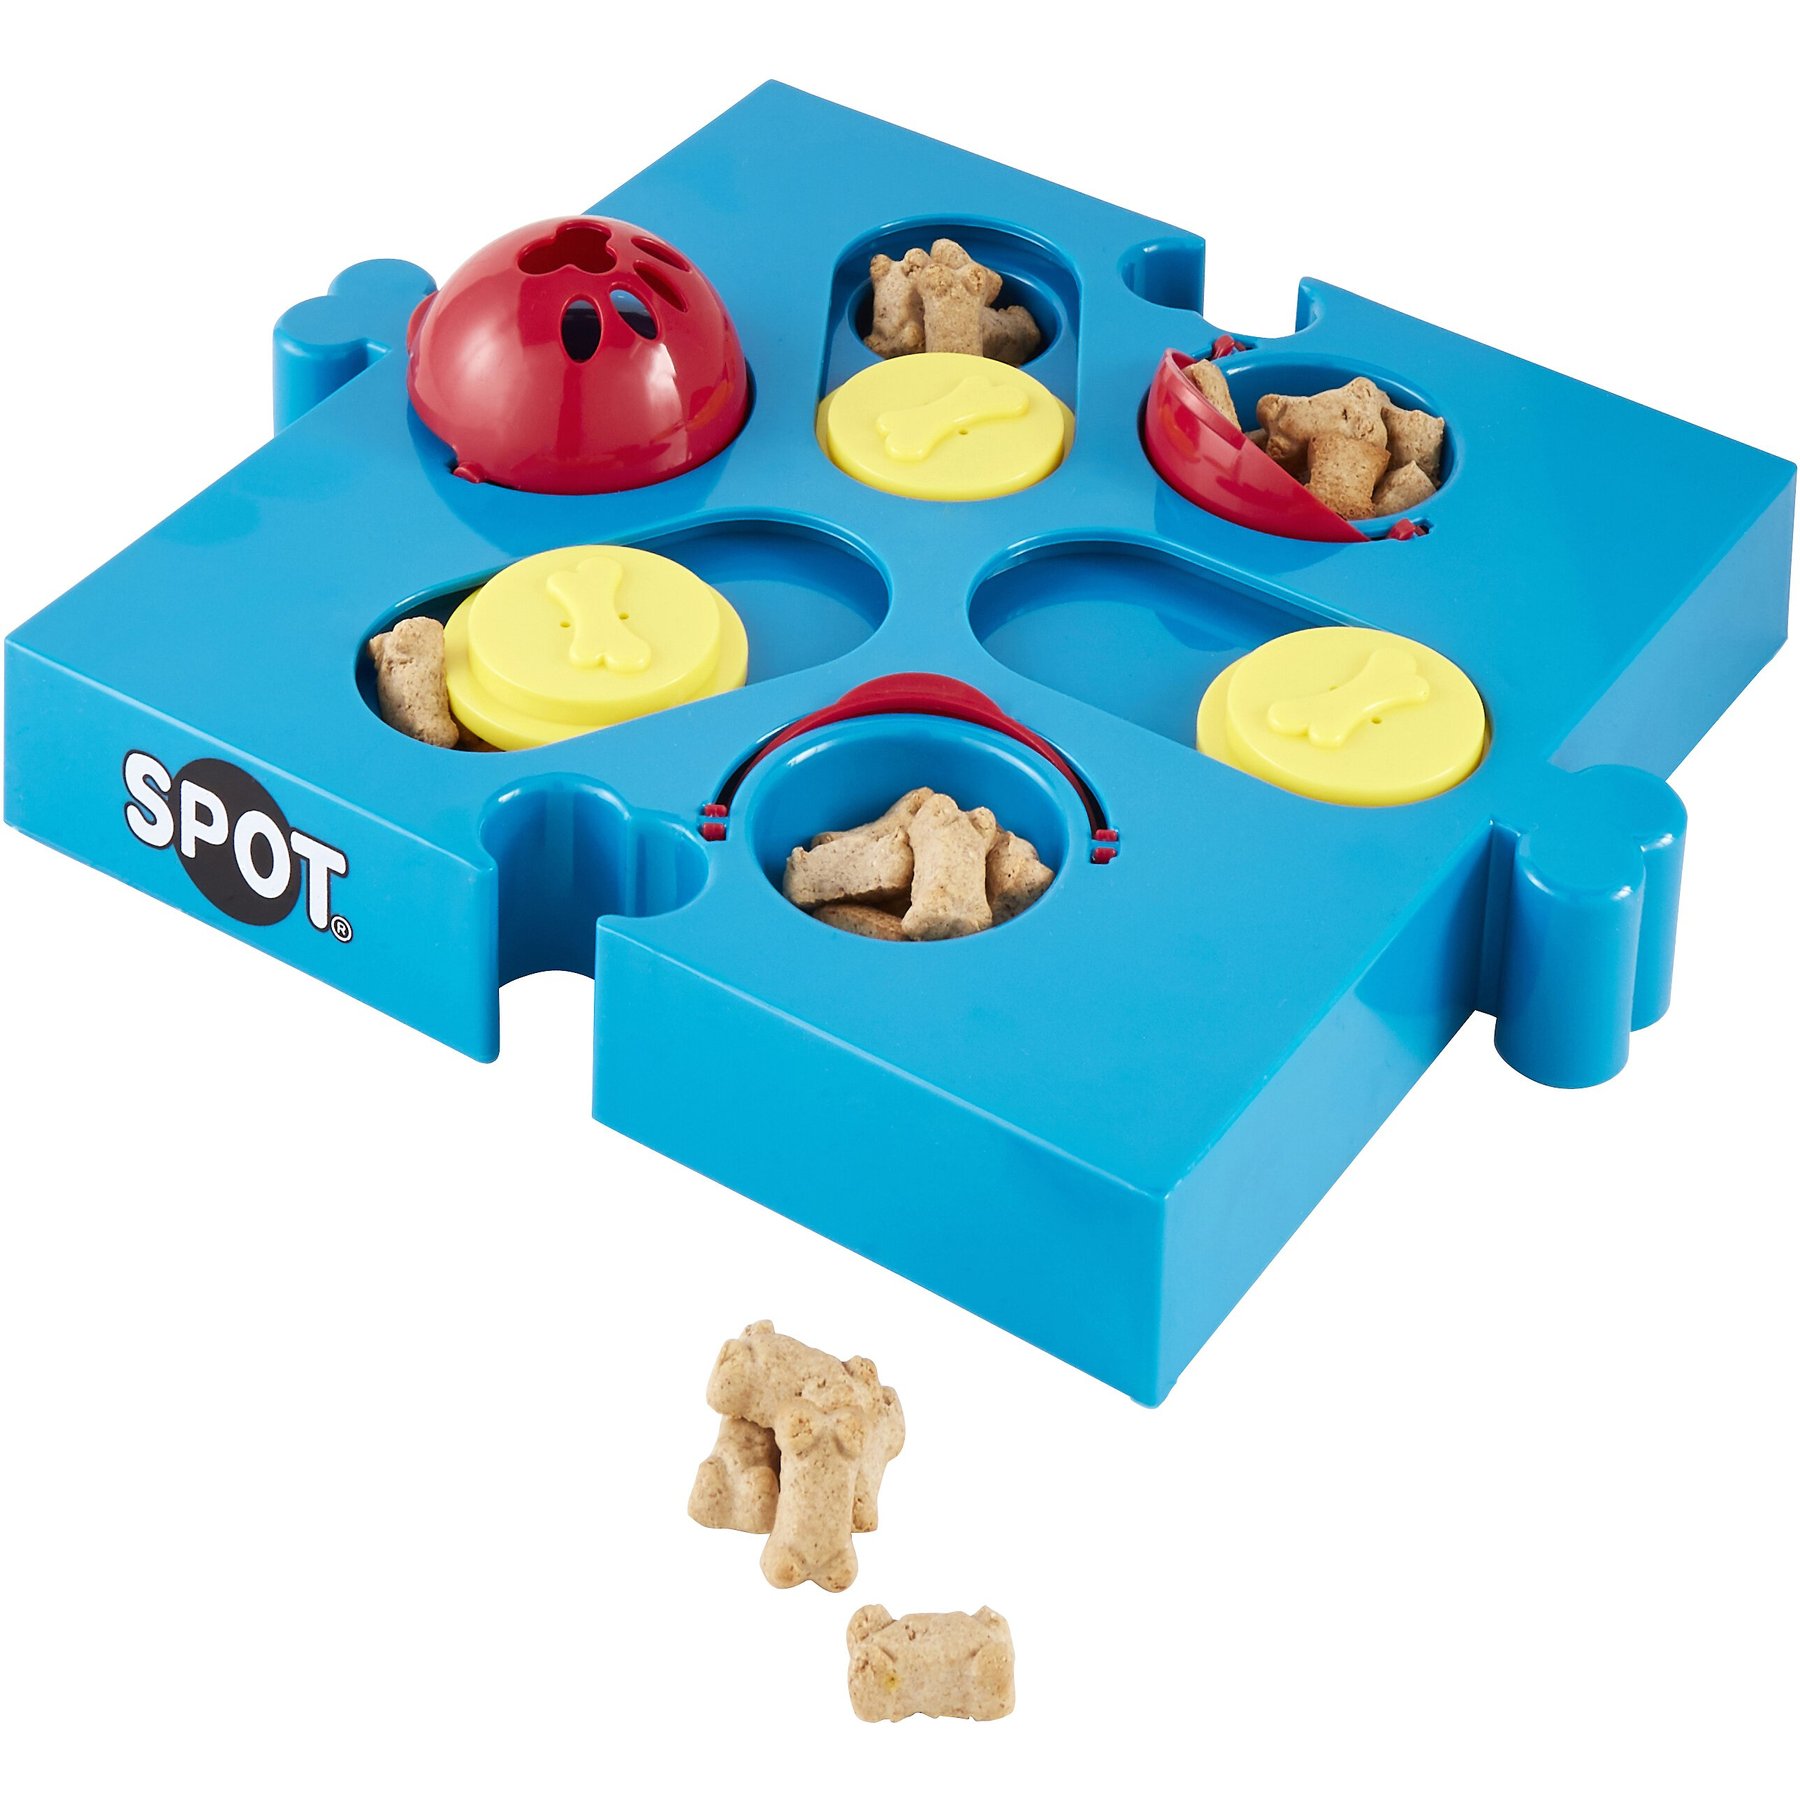 Spot Seek A Treat Flip N Slide Connector Puzzle – PETquoson